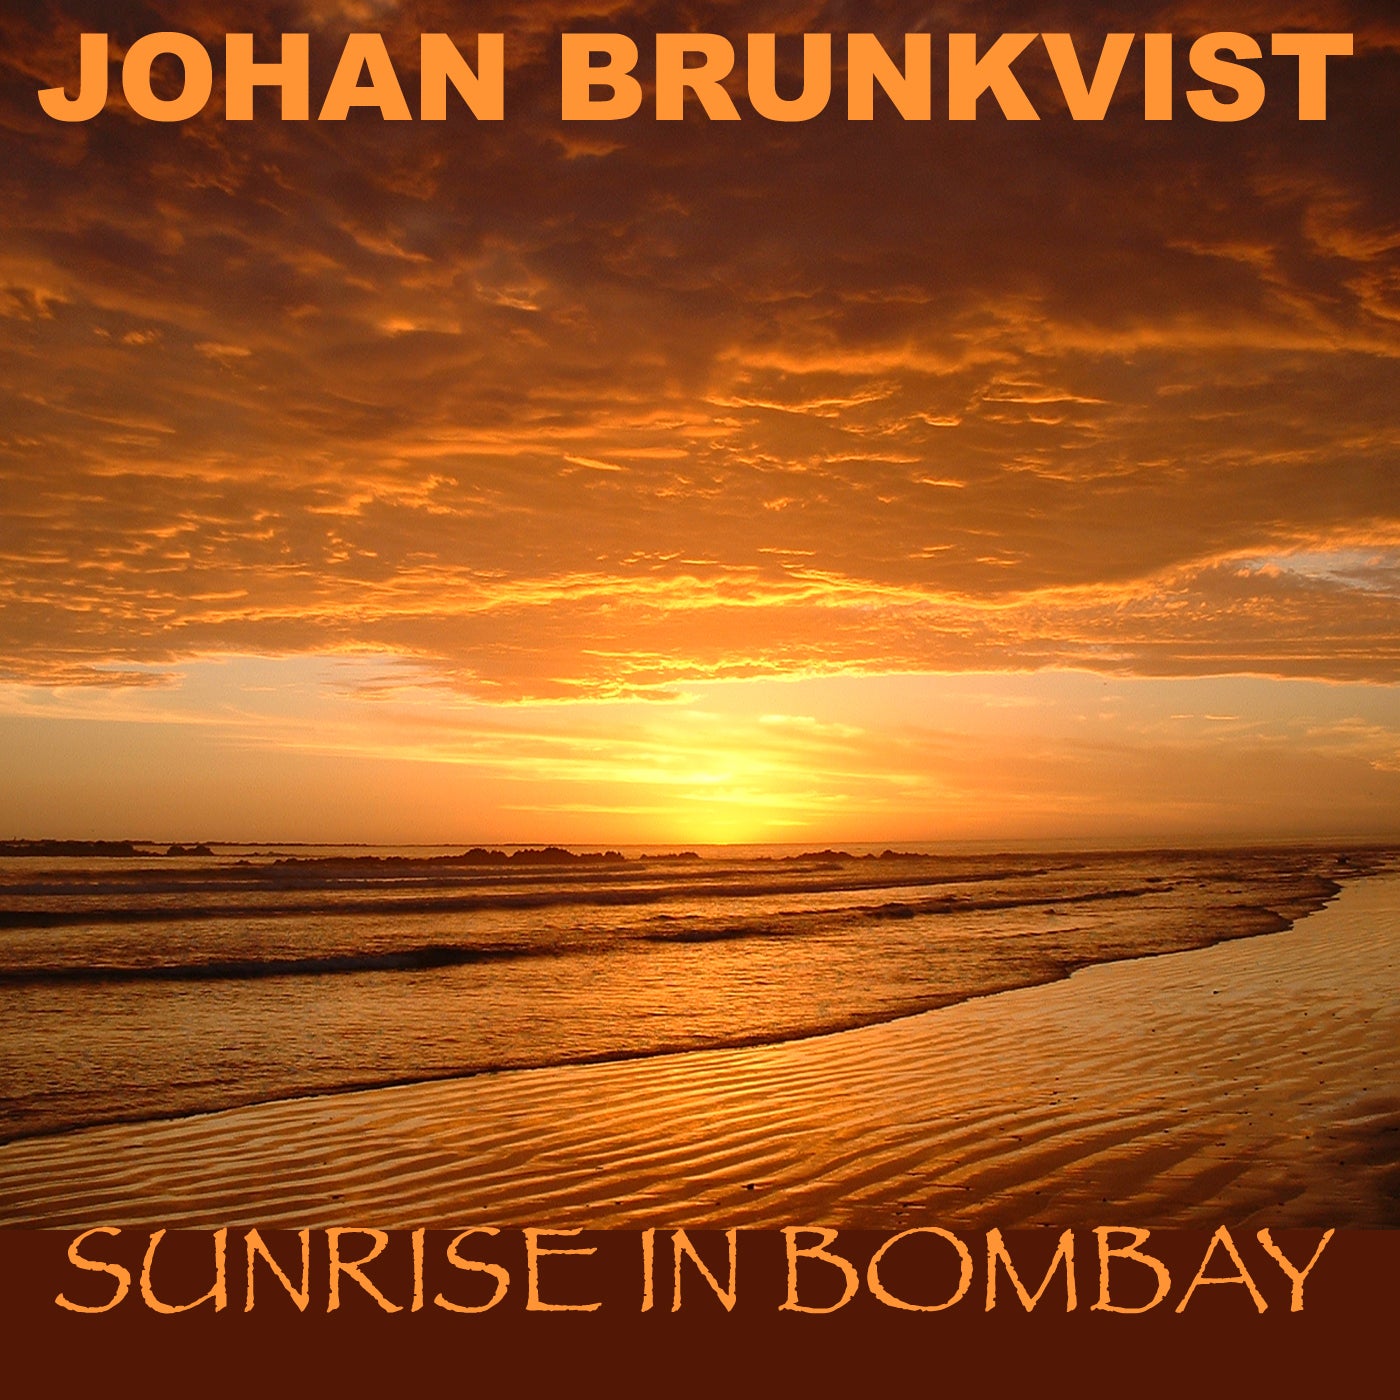 Sunrise In Bombay